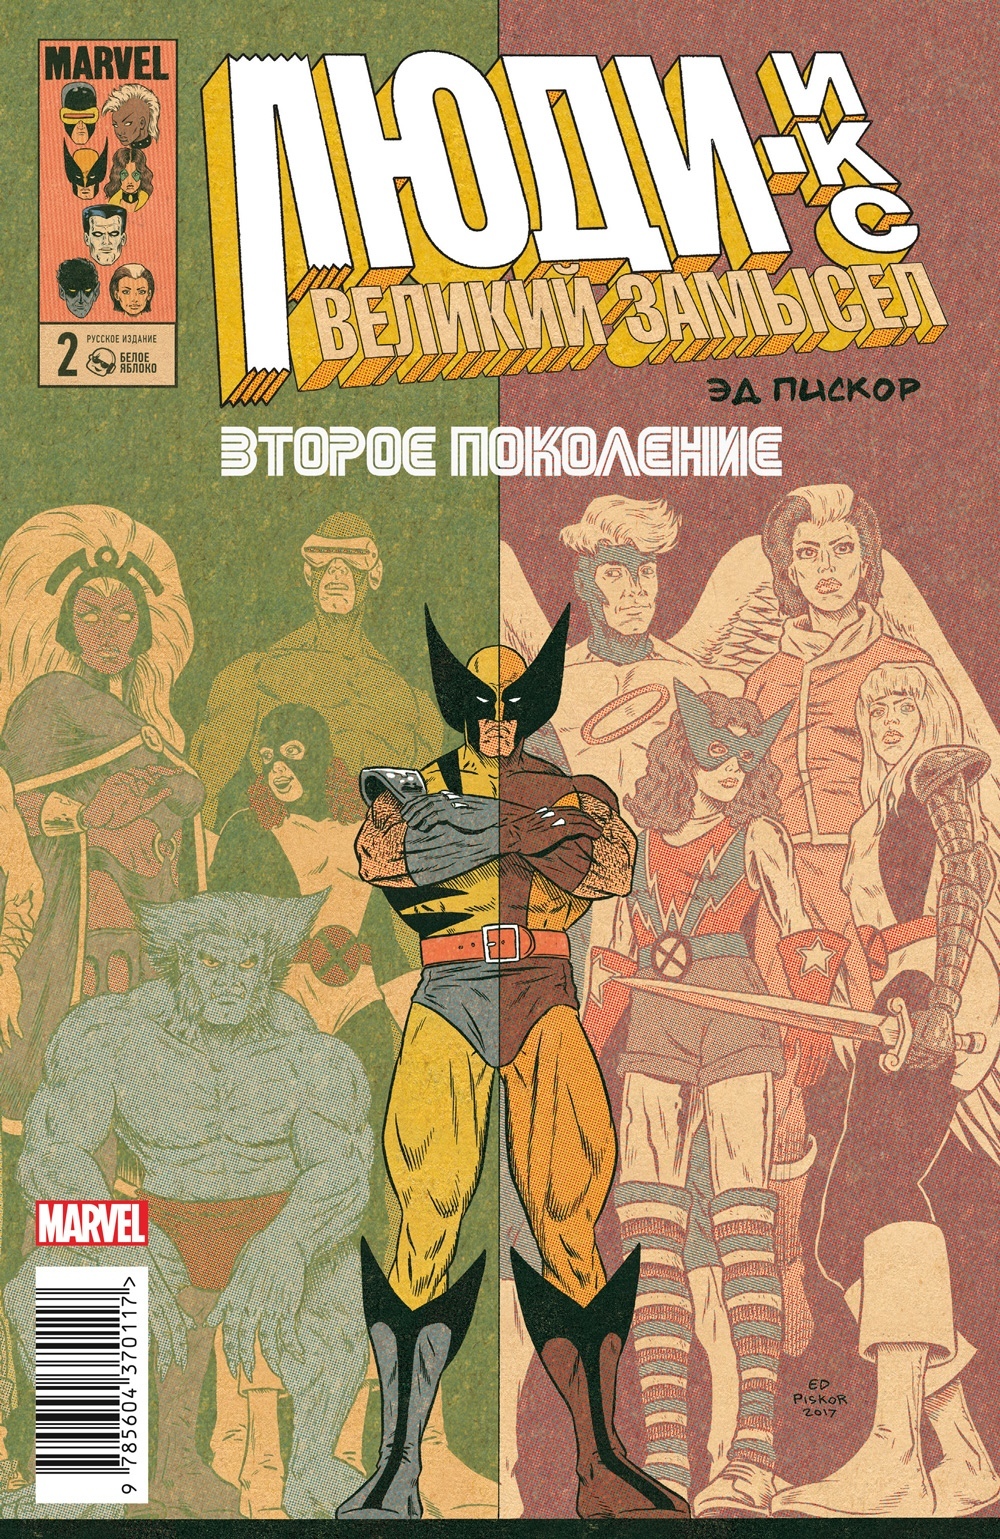 Комикс Люди Икс: Великий замысел – Второе поколение №2. Оригинальная обложка от 1С Интерес